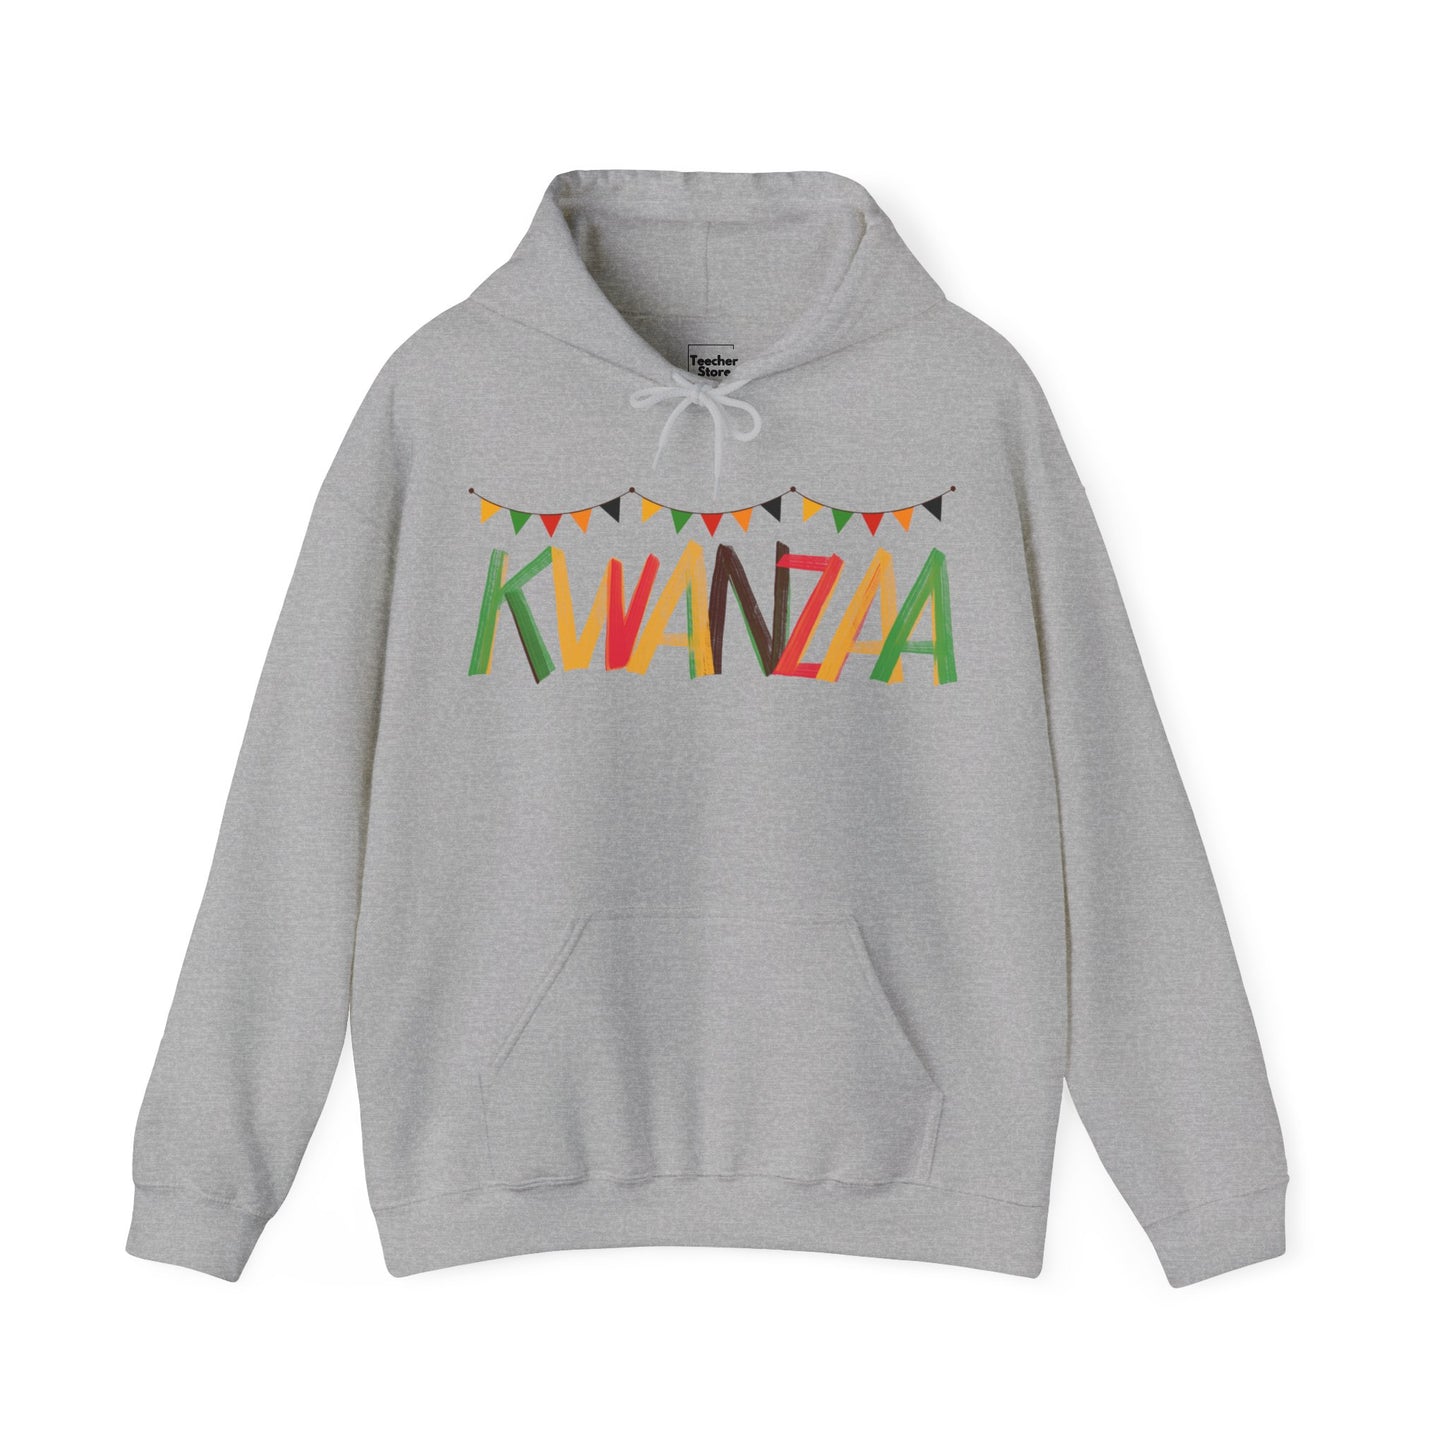 Kwanzaa Hooded Sweatshirt